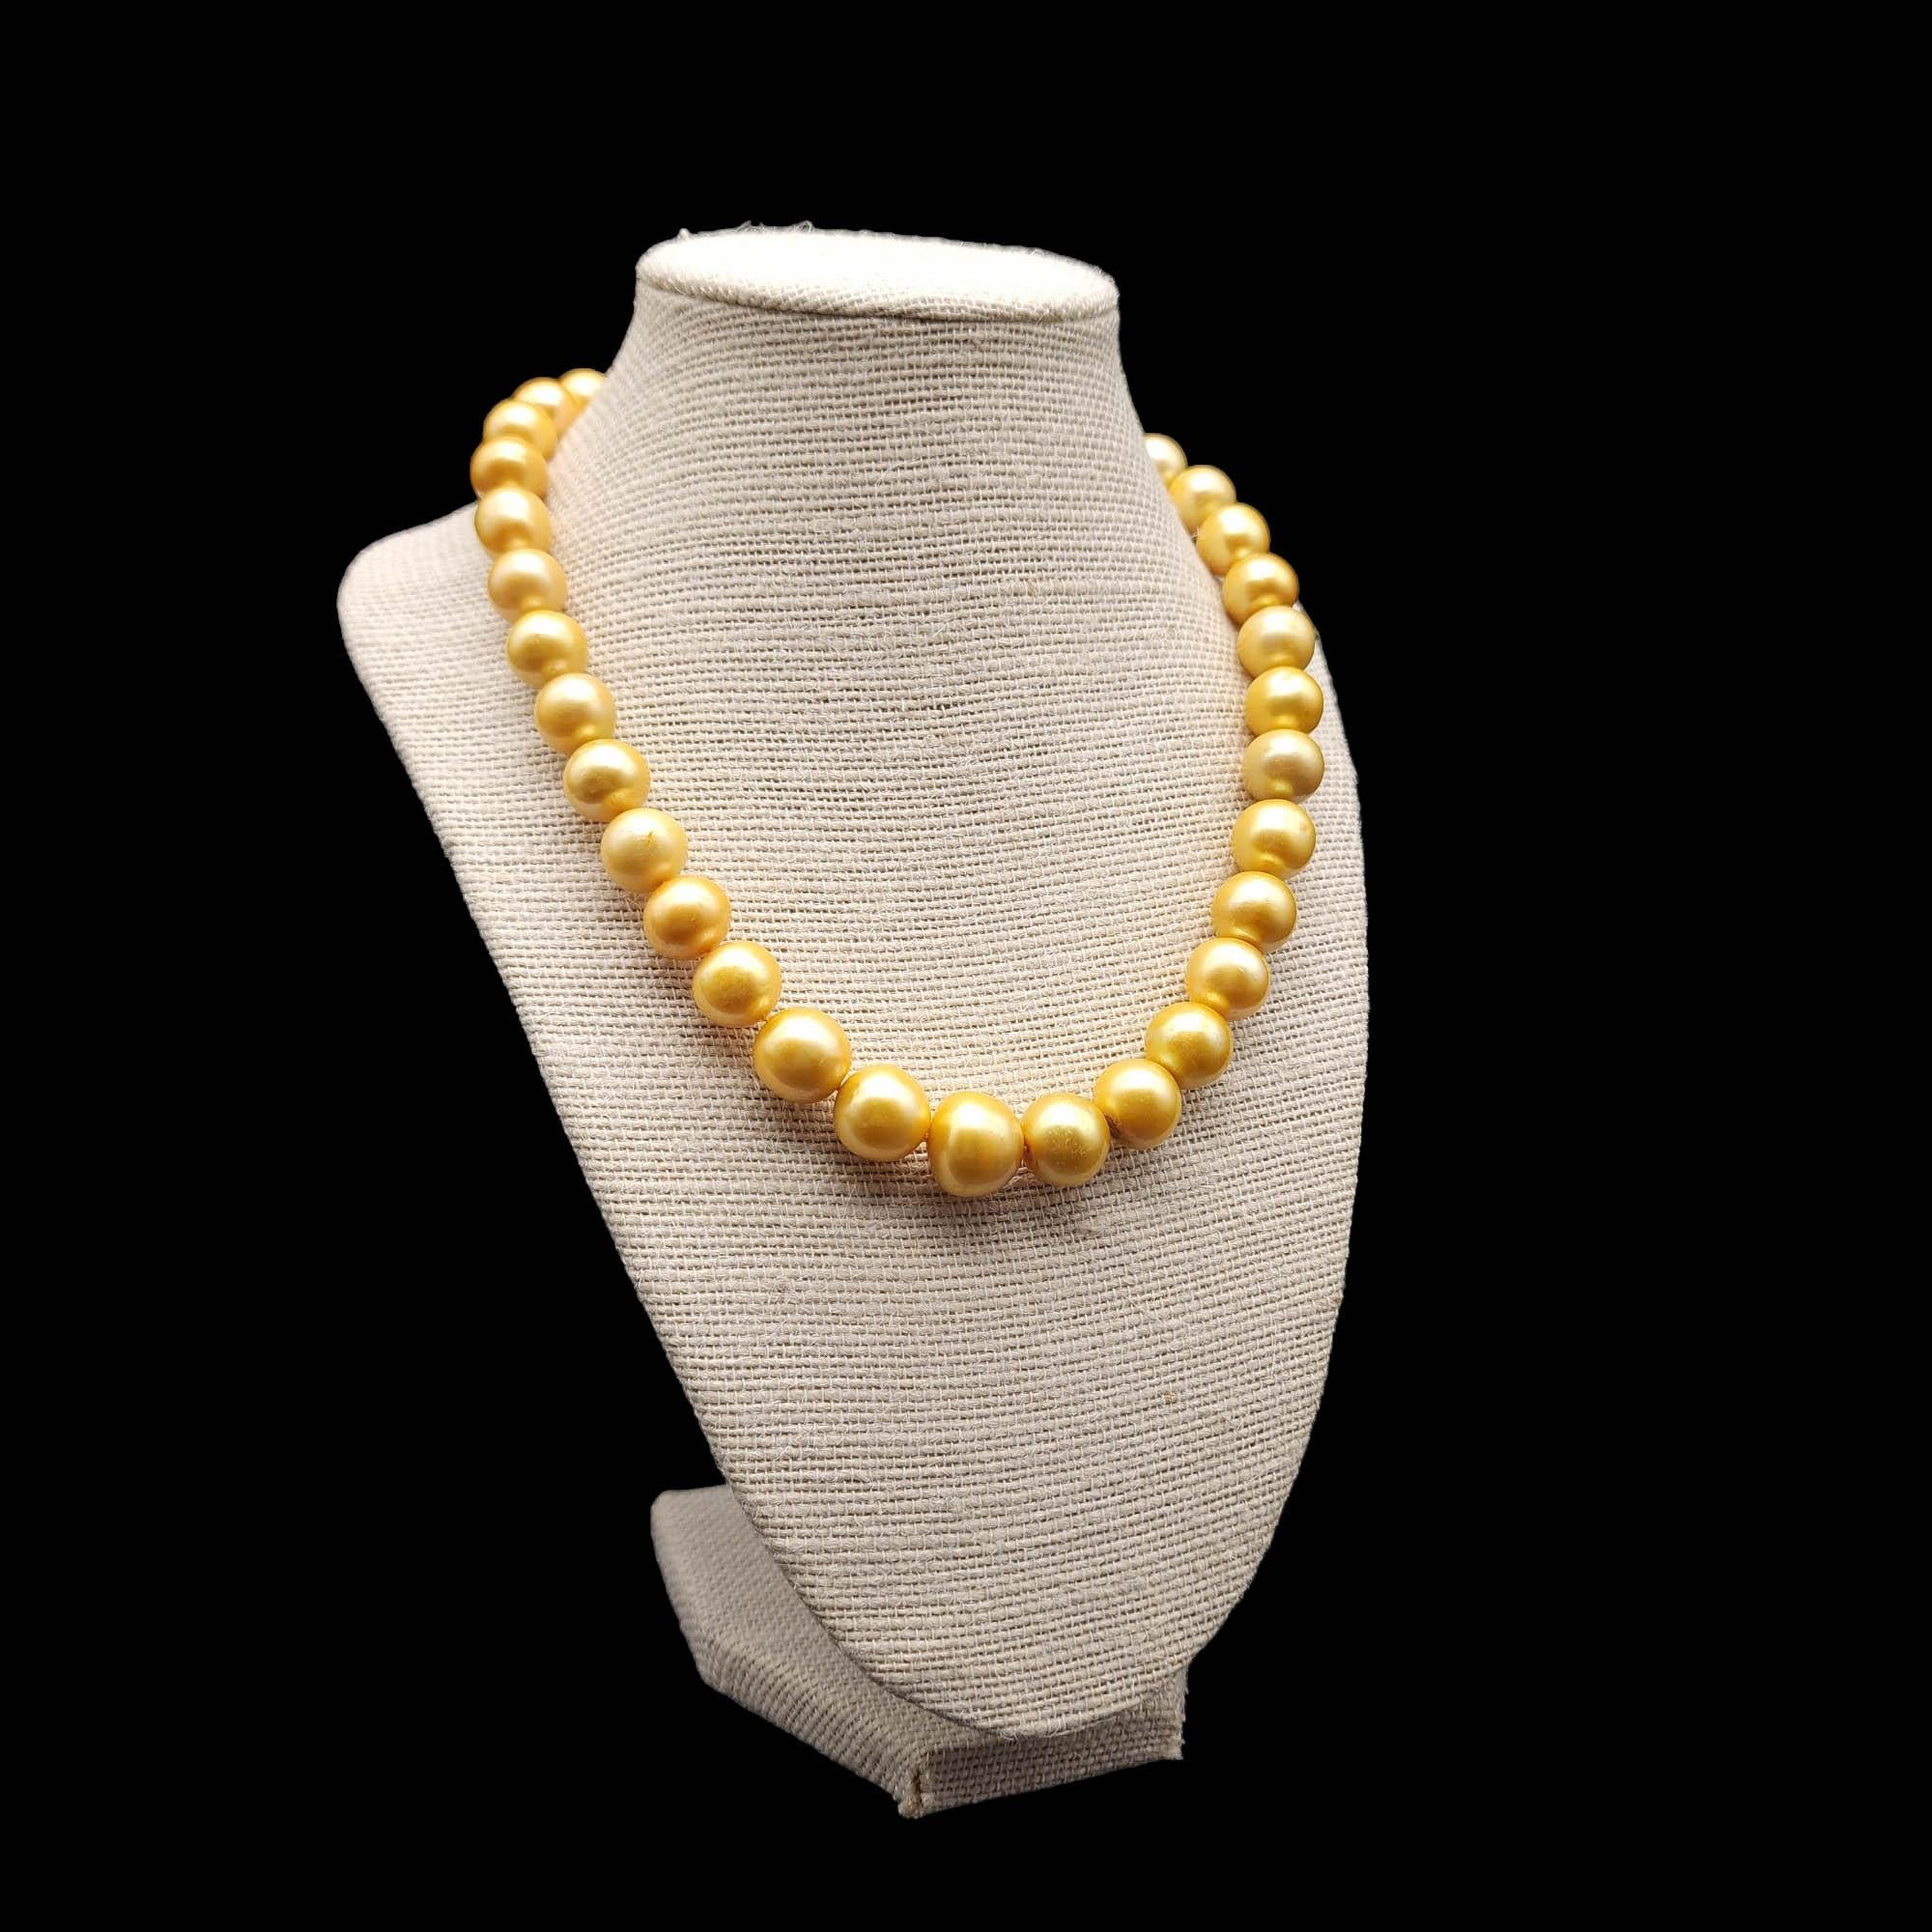 Länge der Halskette: 46cm / 17.75 inches
Zuchtperle, von 1 cm bis 1,5 cm
Marken / Punzierungen: 925 (Schließe)

Schwelgen Sie in der Opulenz unserer goldenen Perlenkette, einer Symphonie aus Glanz und Eleganz. Jede einzelne goldene Perle wird